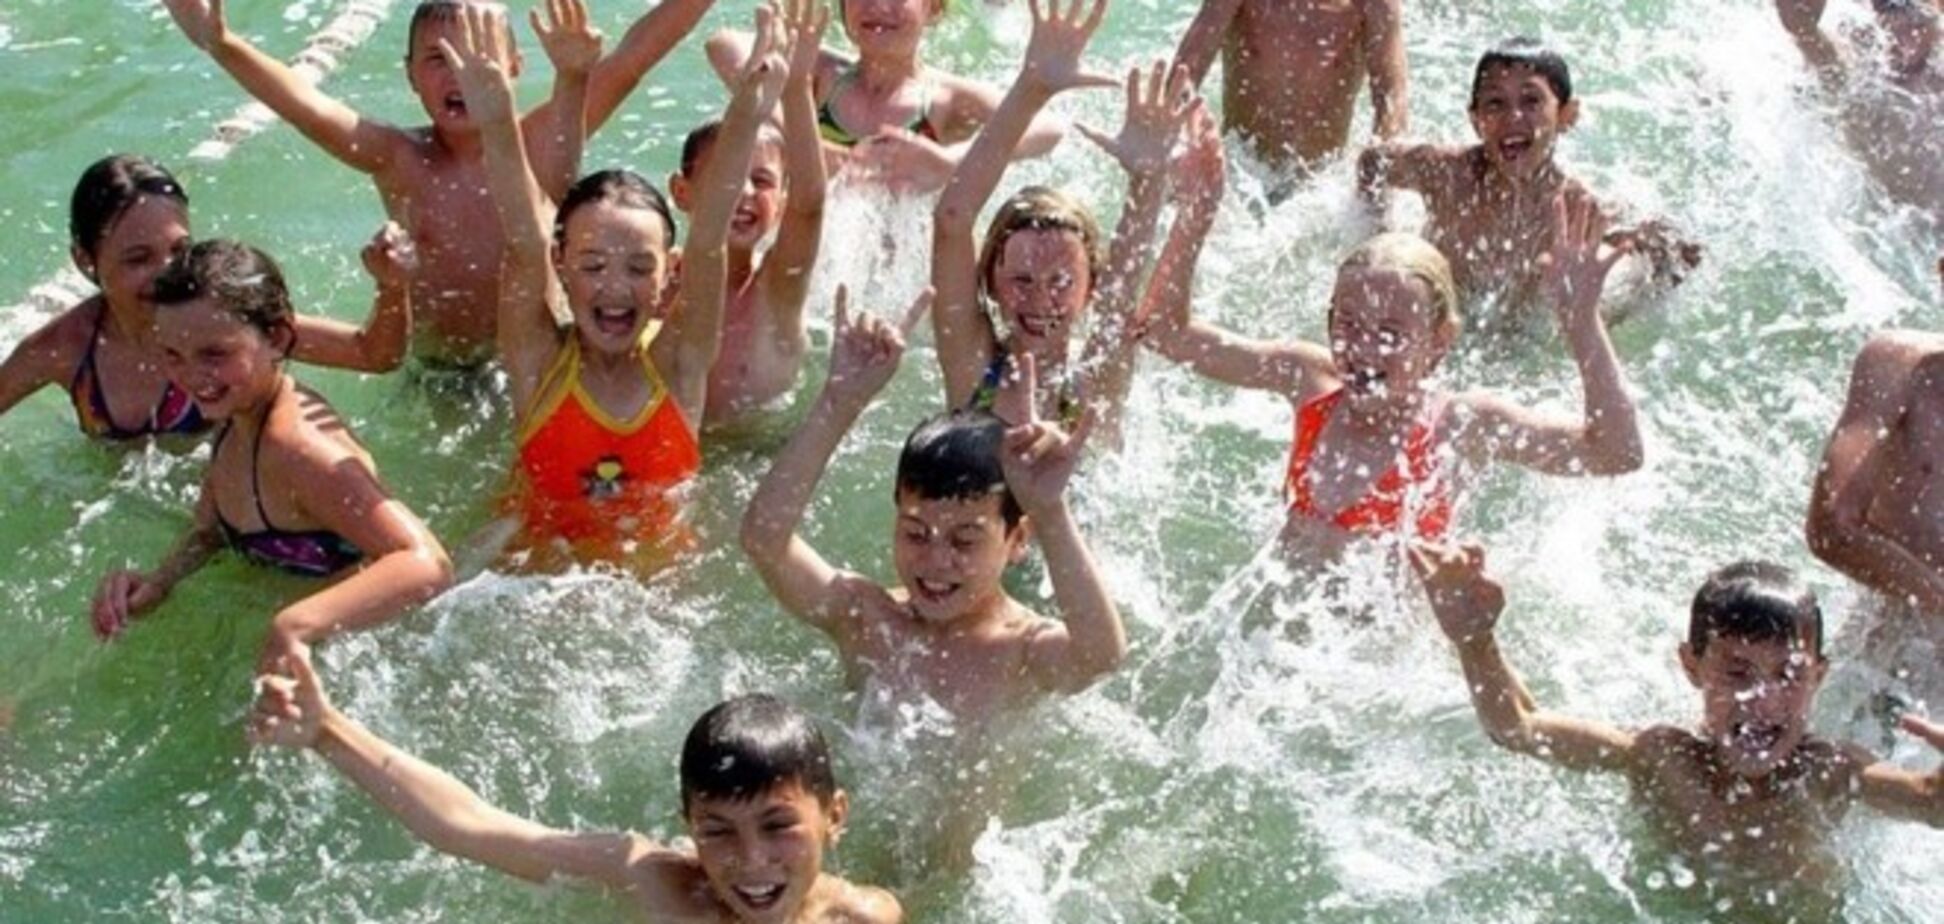 Россия намерена оправлять детей на отдых в Крым по купонам